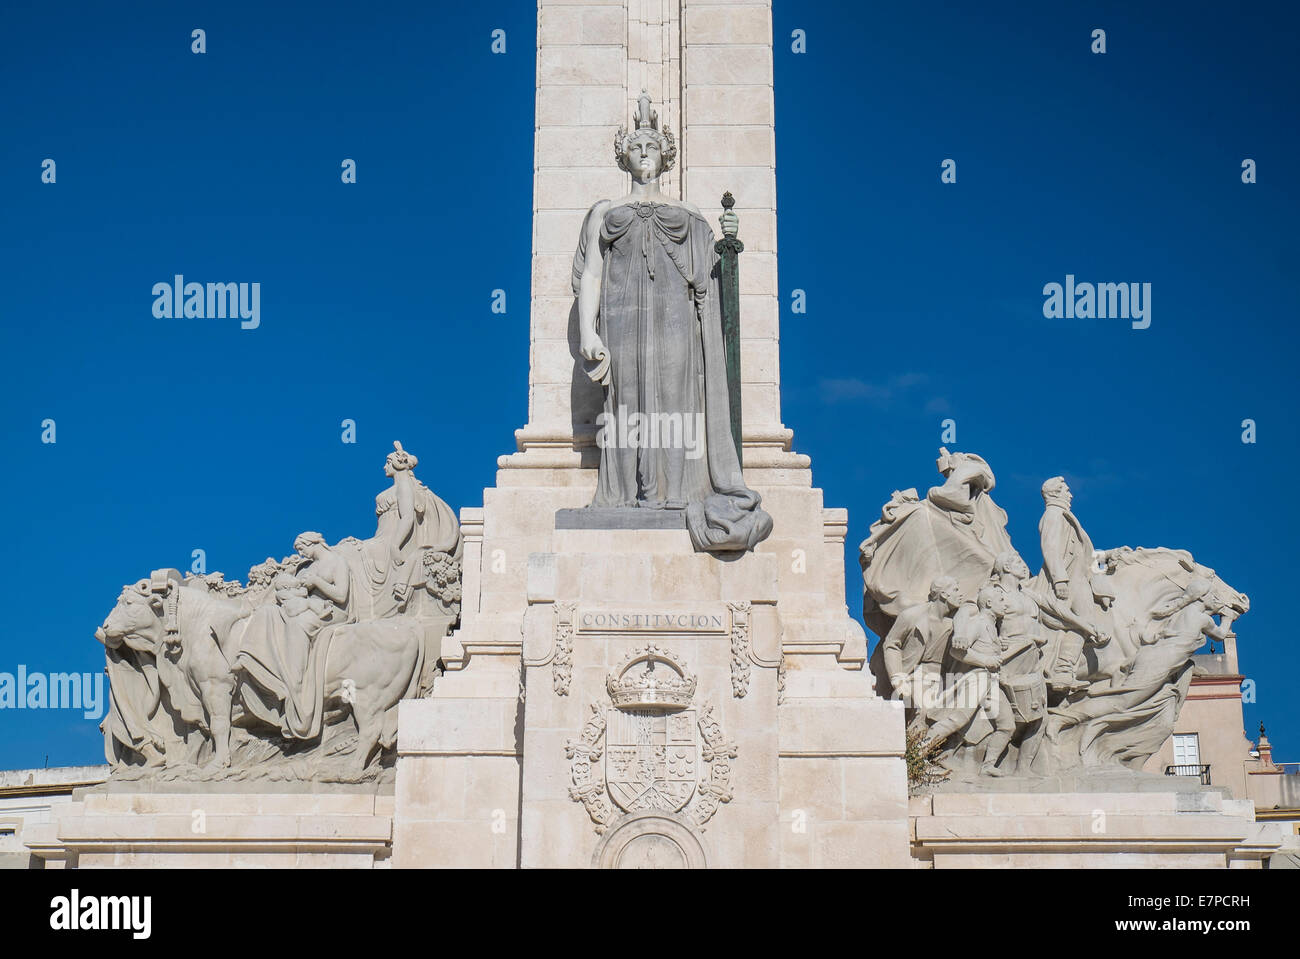 Spanien, Cadiz, Denkmal zur Verfassung von 1813 Stockfoto